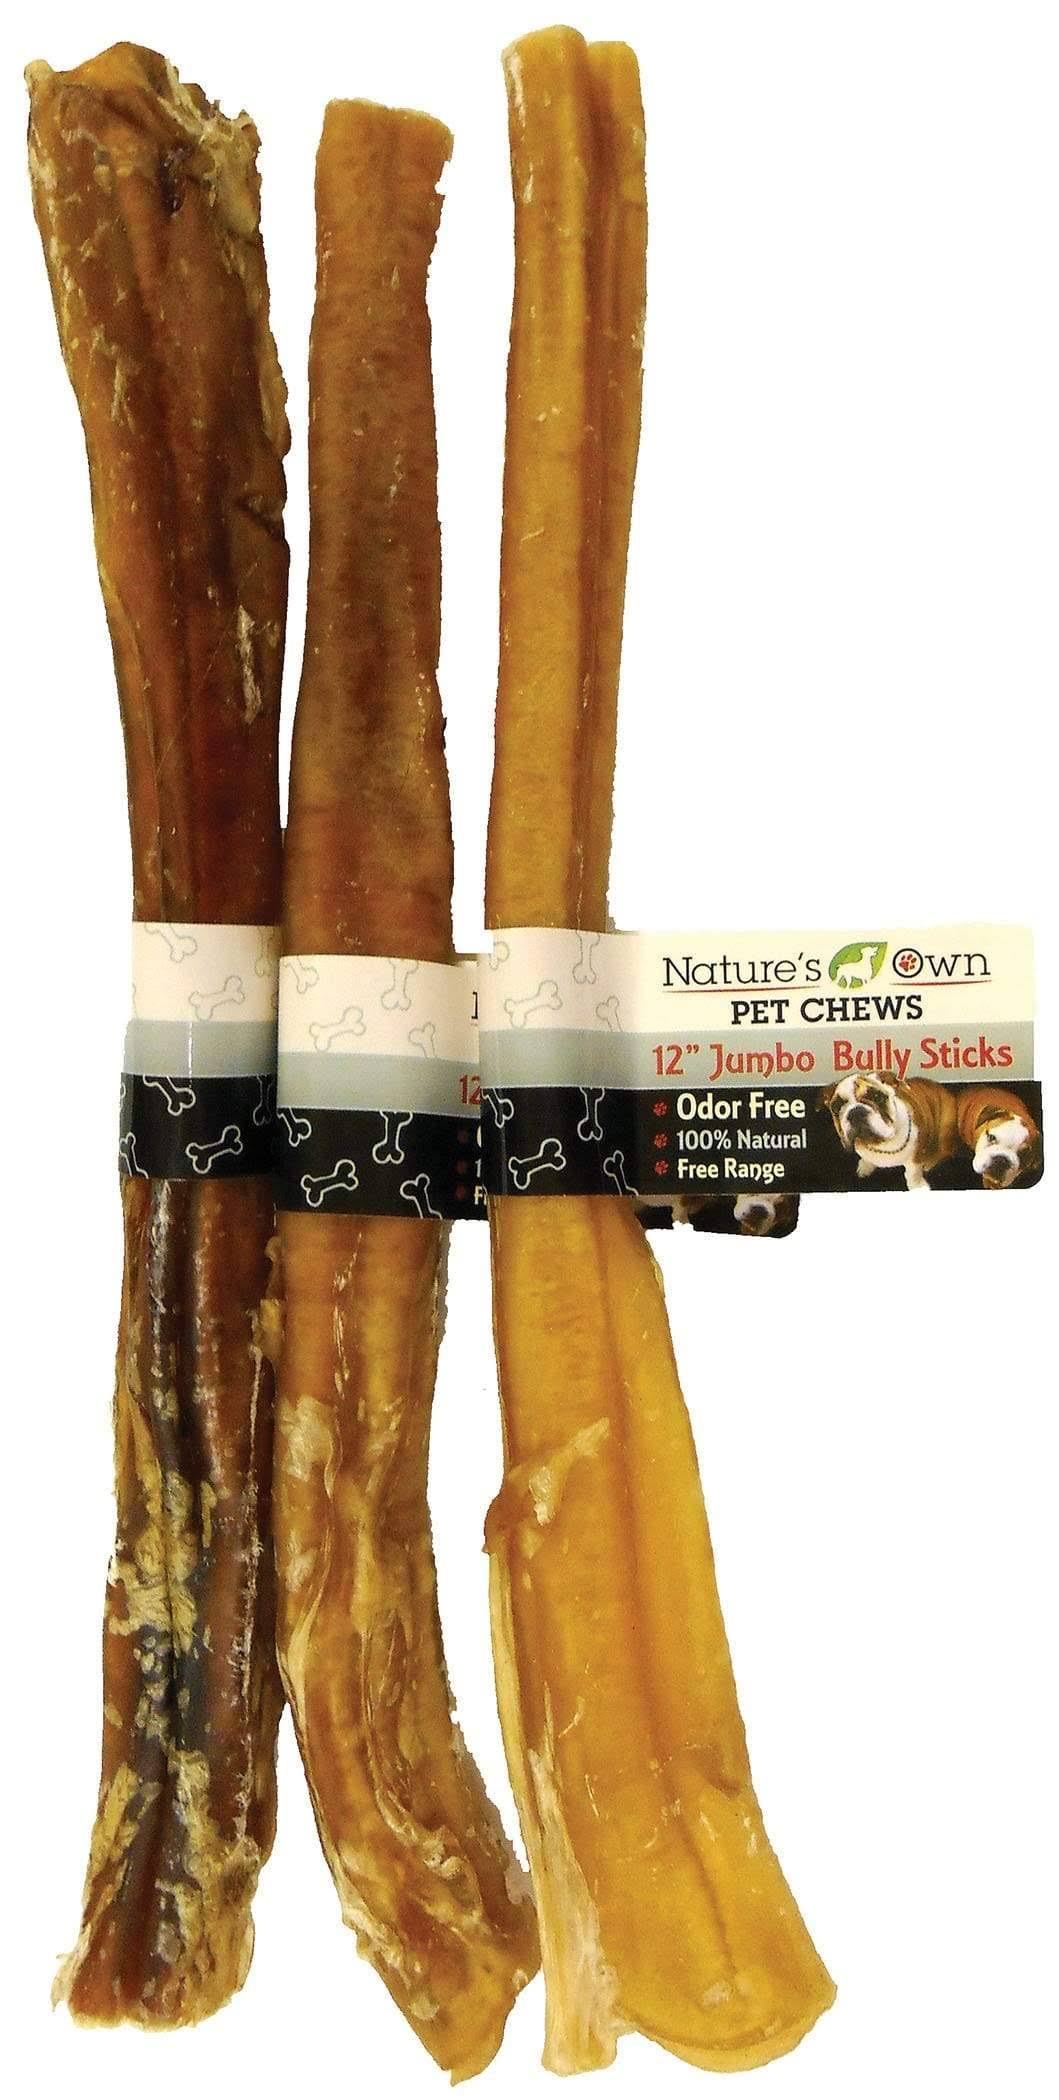 Nature's Own Jumbo Bully Stick Dog Chew - 12"